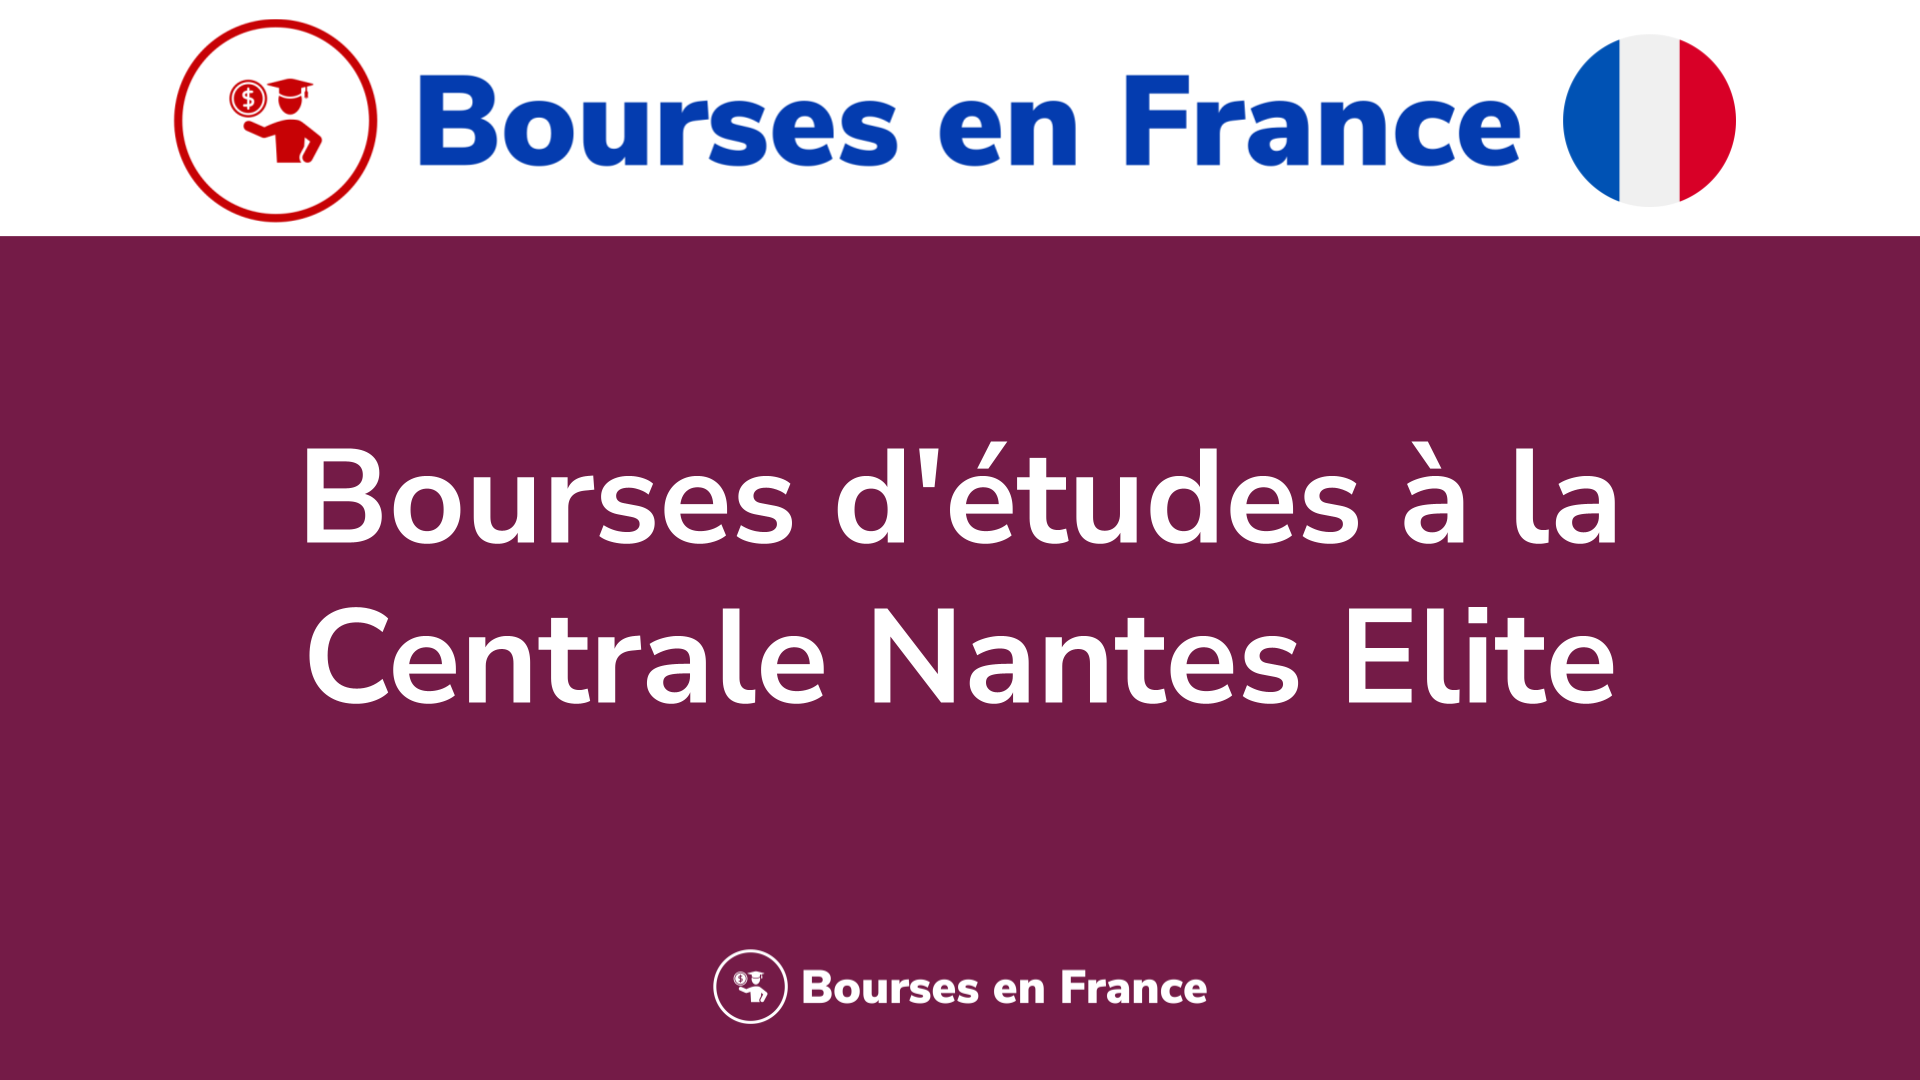 Bourses d'études à la Centrale Nantes Elite